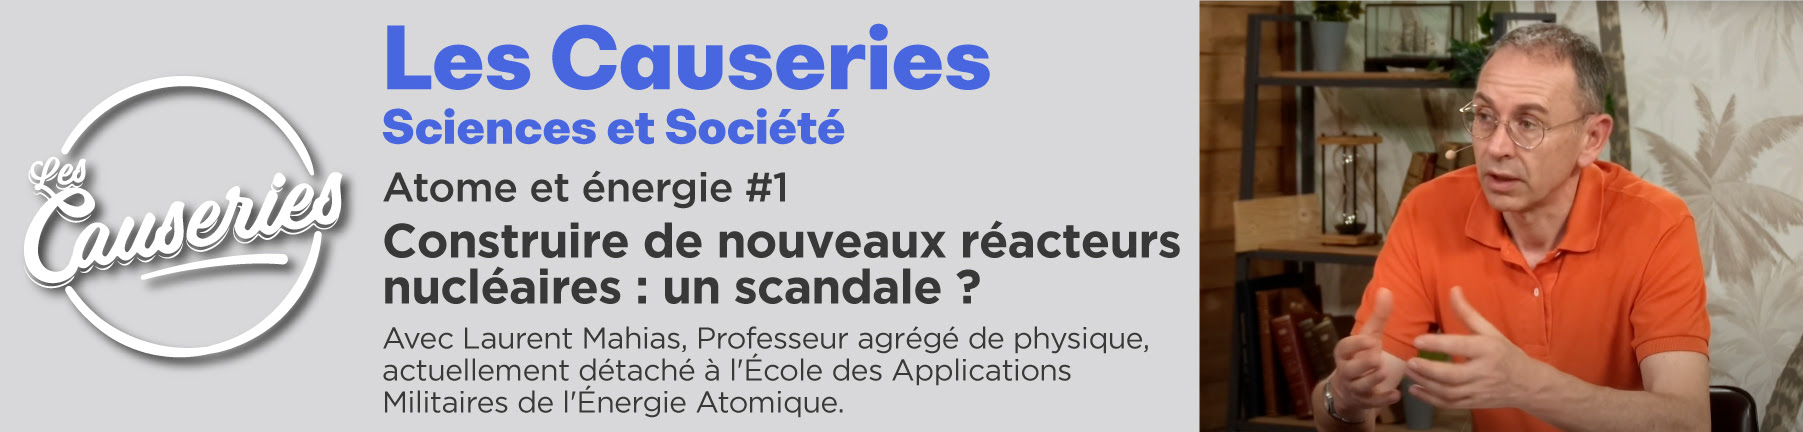 Causeries Sciences et Société - Génétique, sexe et société #5 - partie 3 - sexe et environnement - Pr Joël Grillasca